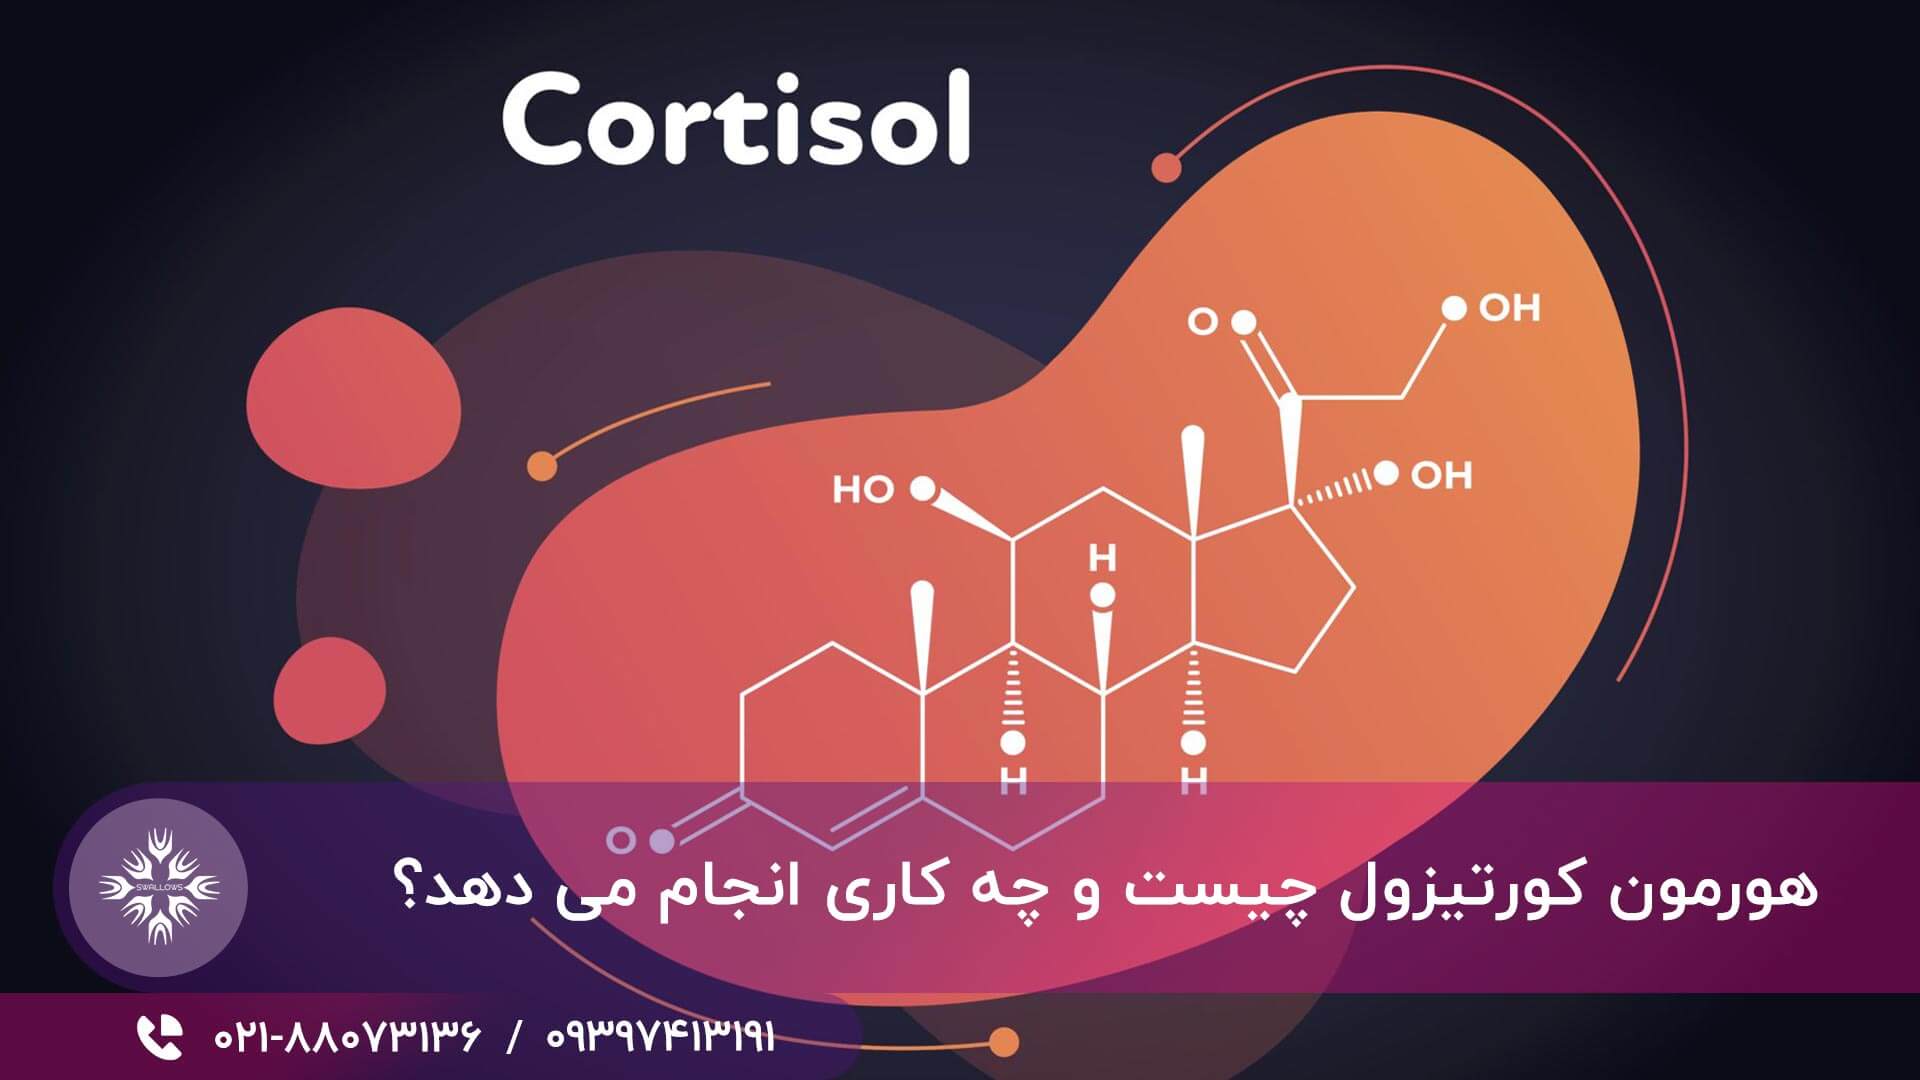 هورمون کورتیزول چیست و چه کاری انجام می دهد؟